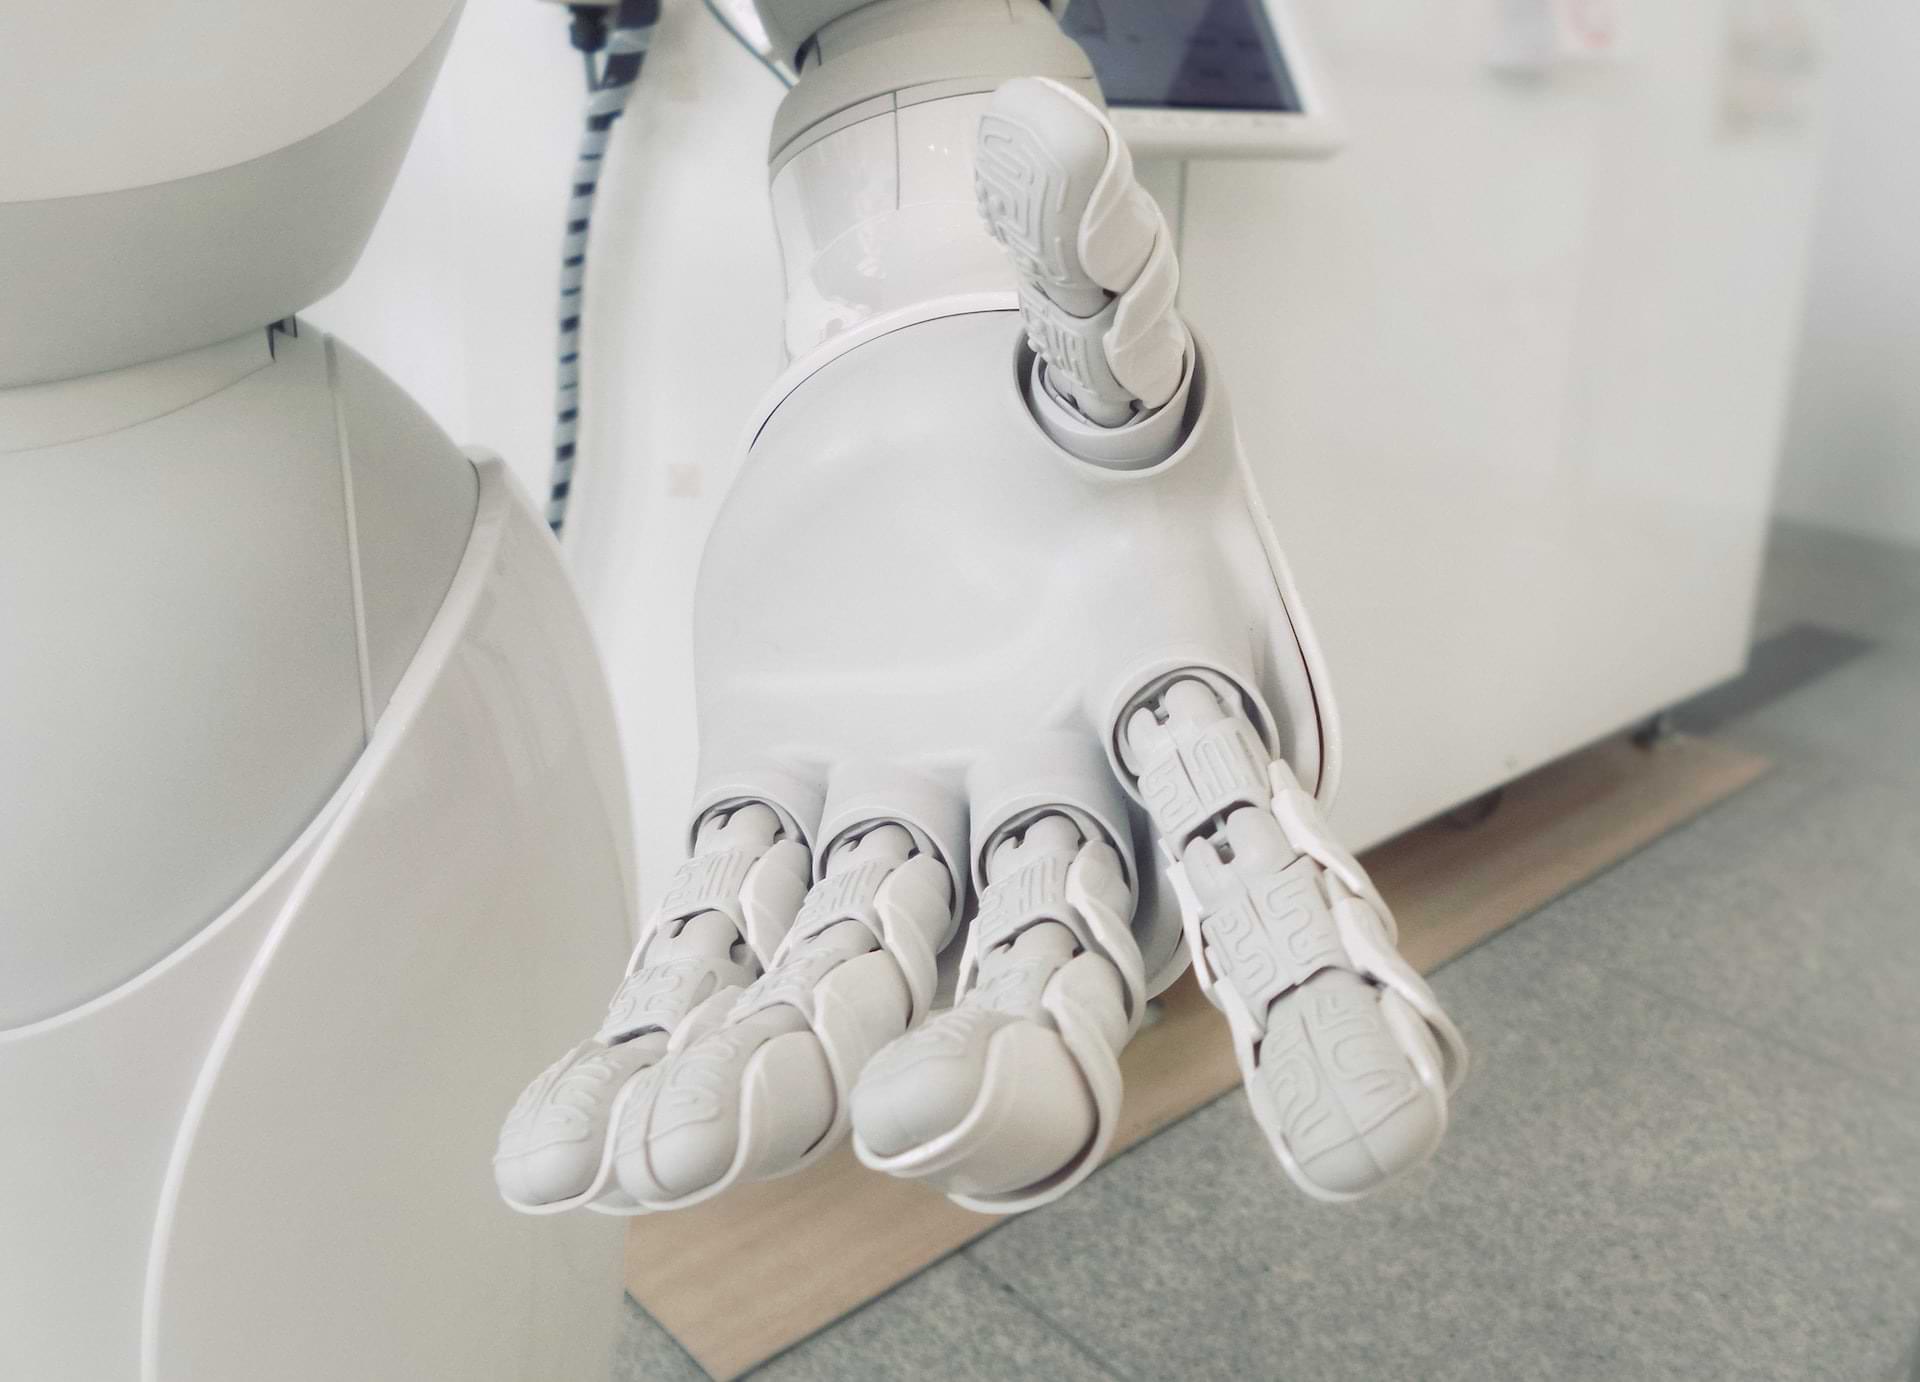 Robotique & Intelligence Artificielle